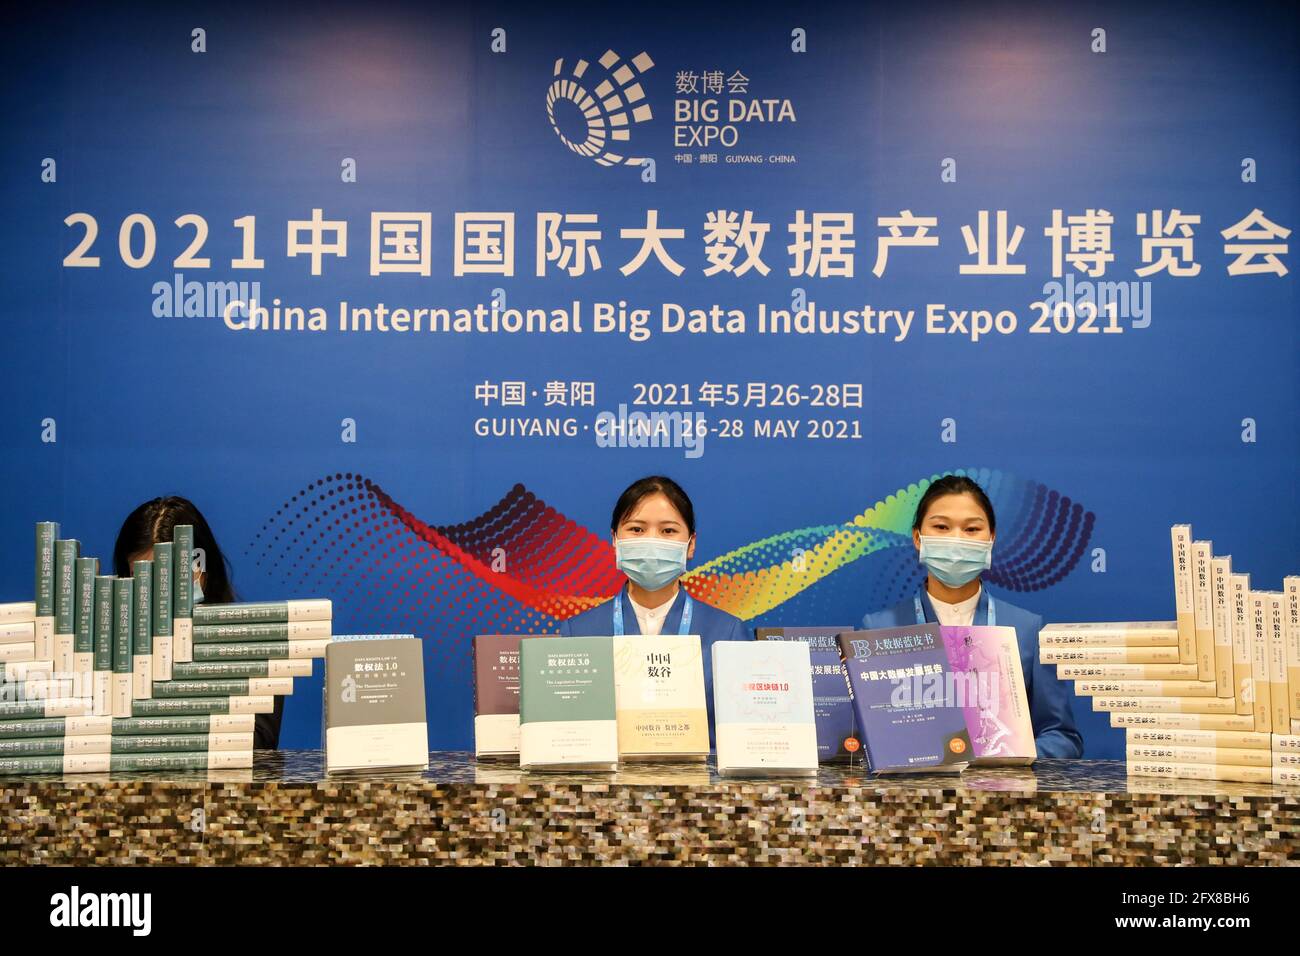 (210526) -- GUIYANG, 26. Mai 2021 (Xinhua) -- datenbezogene Publikationen werden auf der China International Big Data Industry Expo 2021 in Guiyang, südwestlich der chinesischen Provinz Guizhou, am 26. Mai 2021 ausgestellt. Hier wurde am Mittwoch die China International Big Data Industry Expo 2021 eröffnet, auf der modernste wissenschaftliche und technologische Innovationen und Errungenschaften auf dem jeweiligen Gebiet vorgestellt wurden. Unter dem Motto „Umarmung digitaler Intelligenz, Bereitstellung neuer Entwicklungen“ ist die diesjährige expo sowohl online als auch offline geplant. Auf der expo werden sechs hochrangige Dialoge stattfinden, um Themen wie die Datensicherheit zu diskutieren Stockfoto